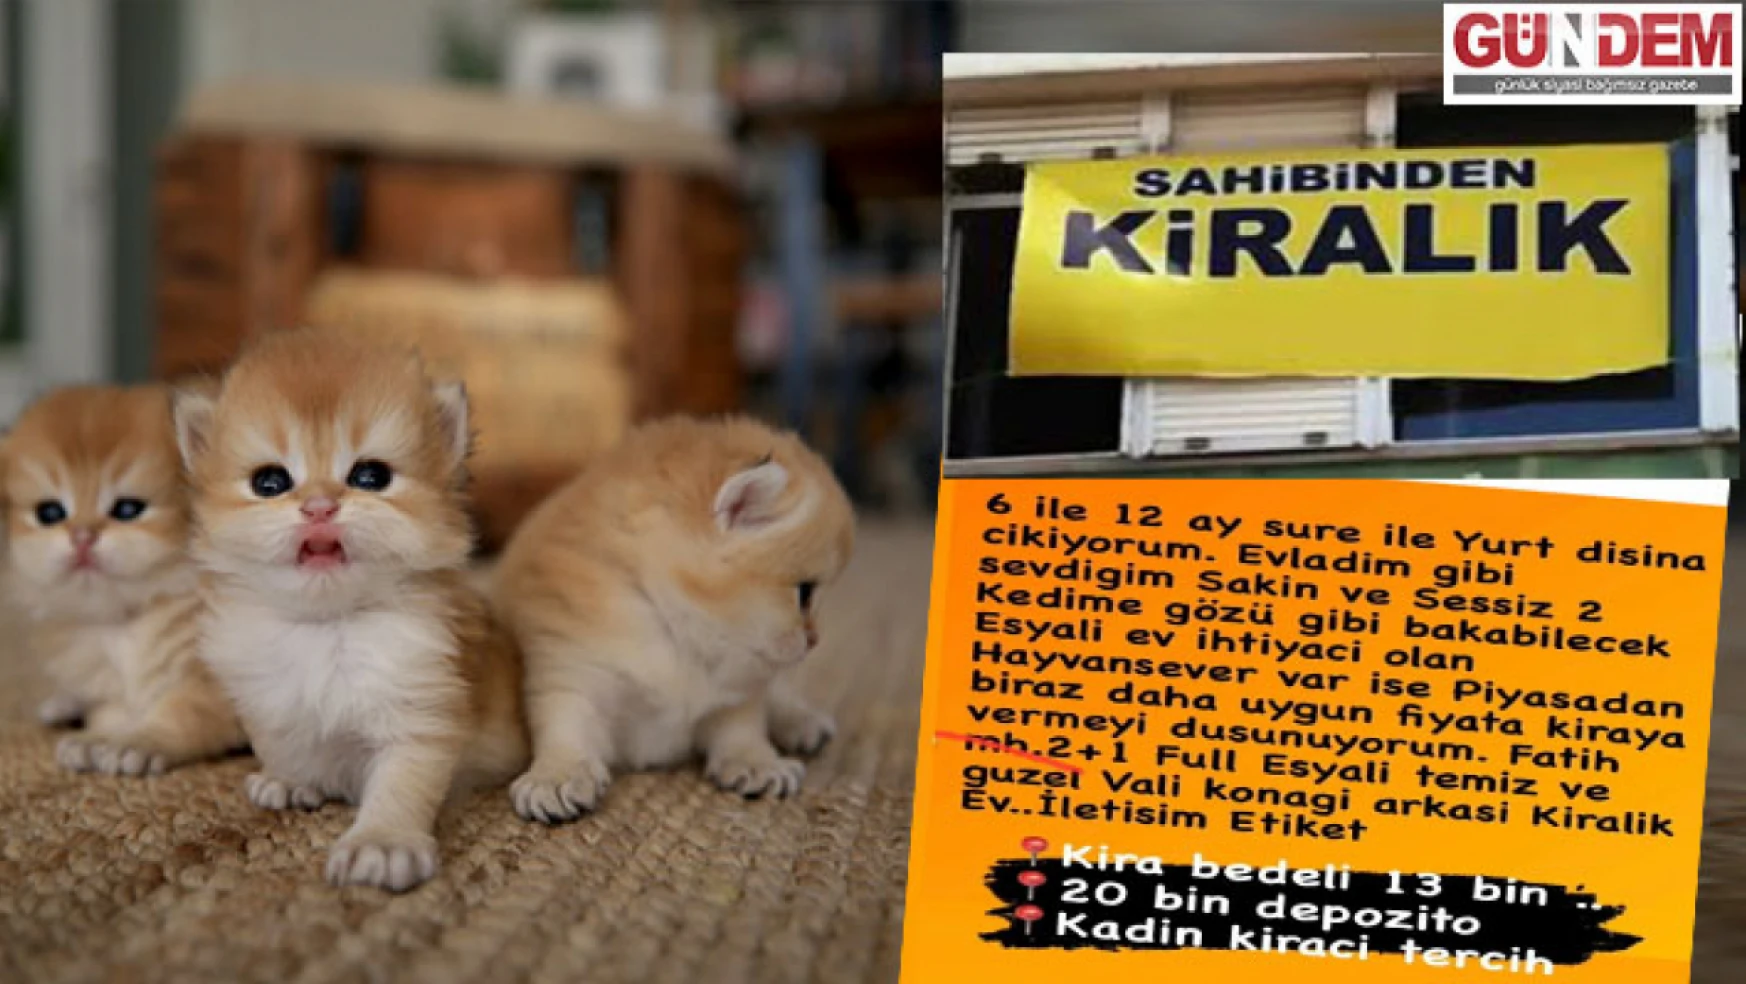 Kedili kiralık ev ilanı sosyal medyayı salladı